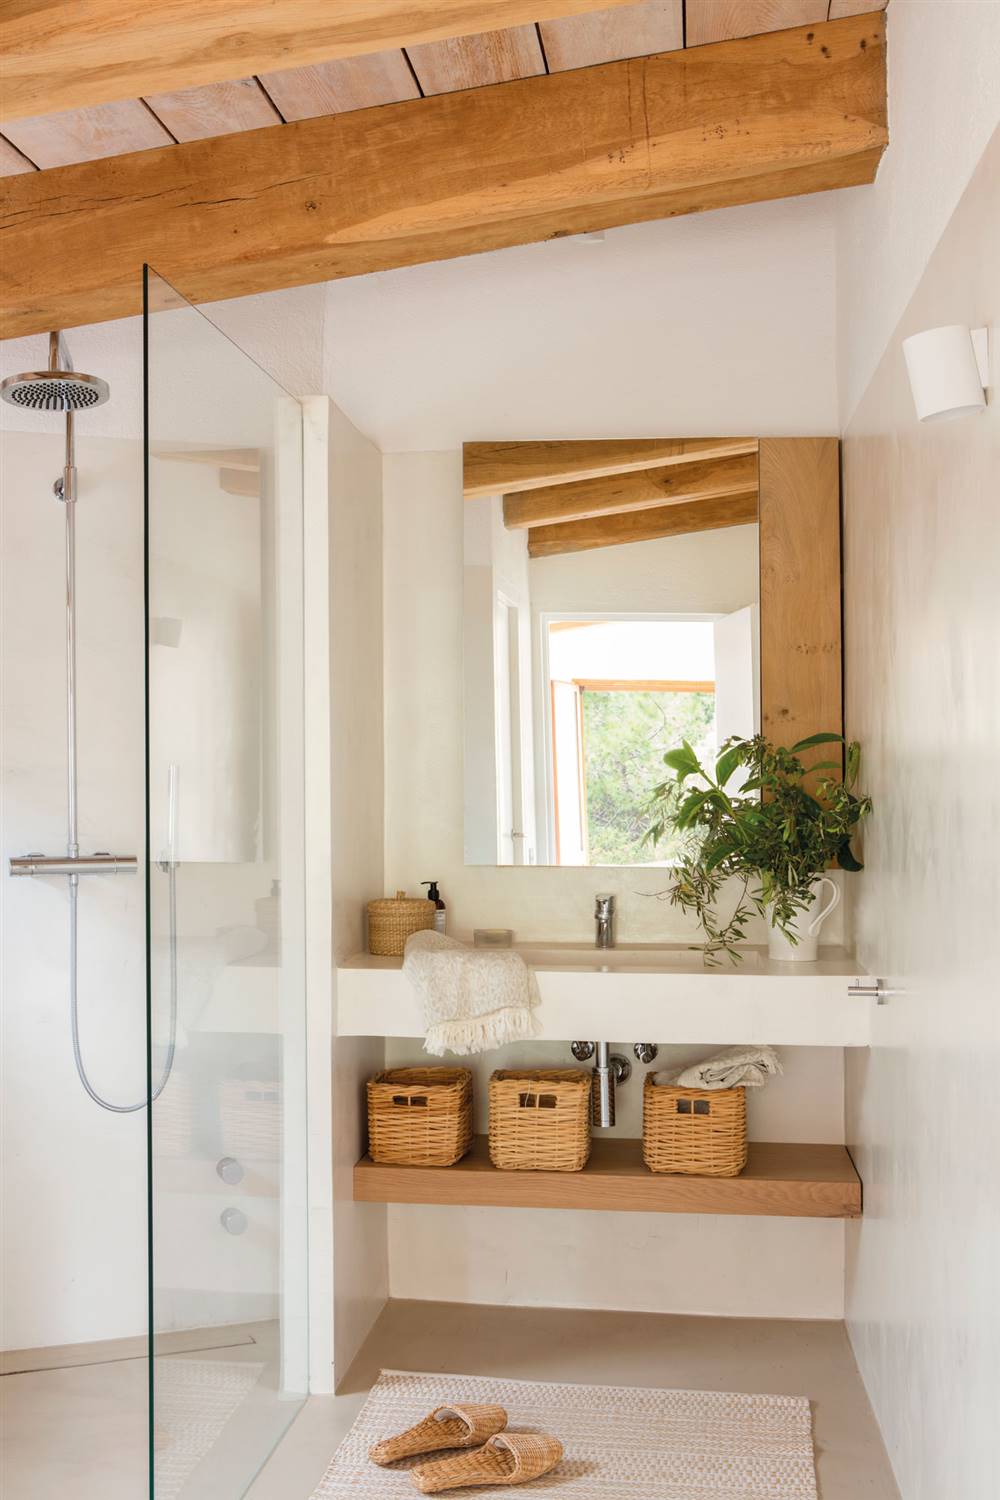 Cuanto cuesta reformar el baño: revestimientos microcemento, ducha, vigas de madera en el techo_486940